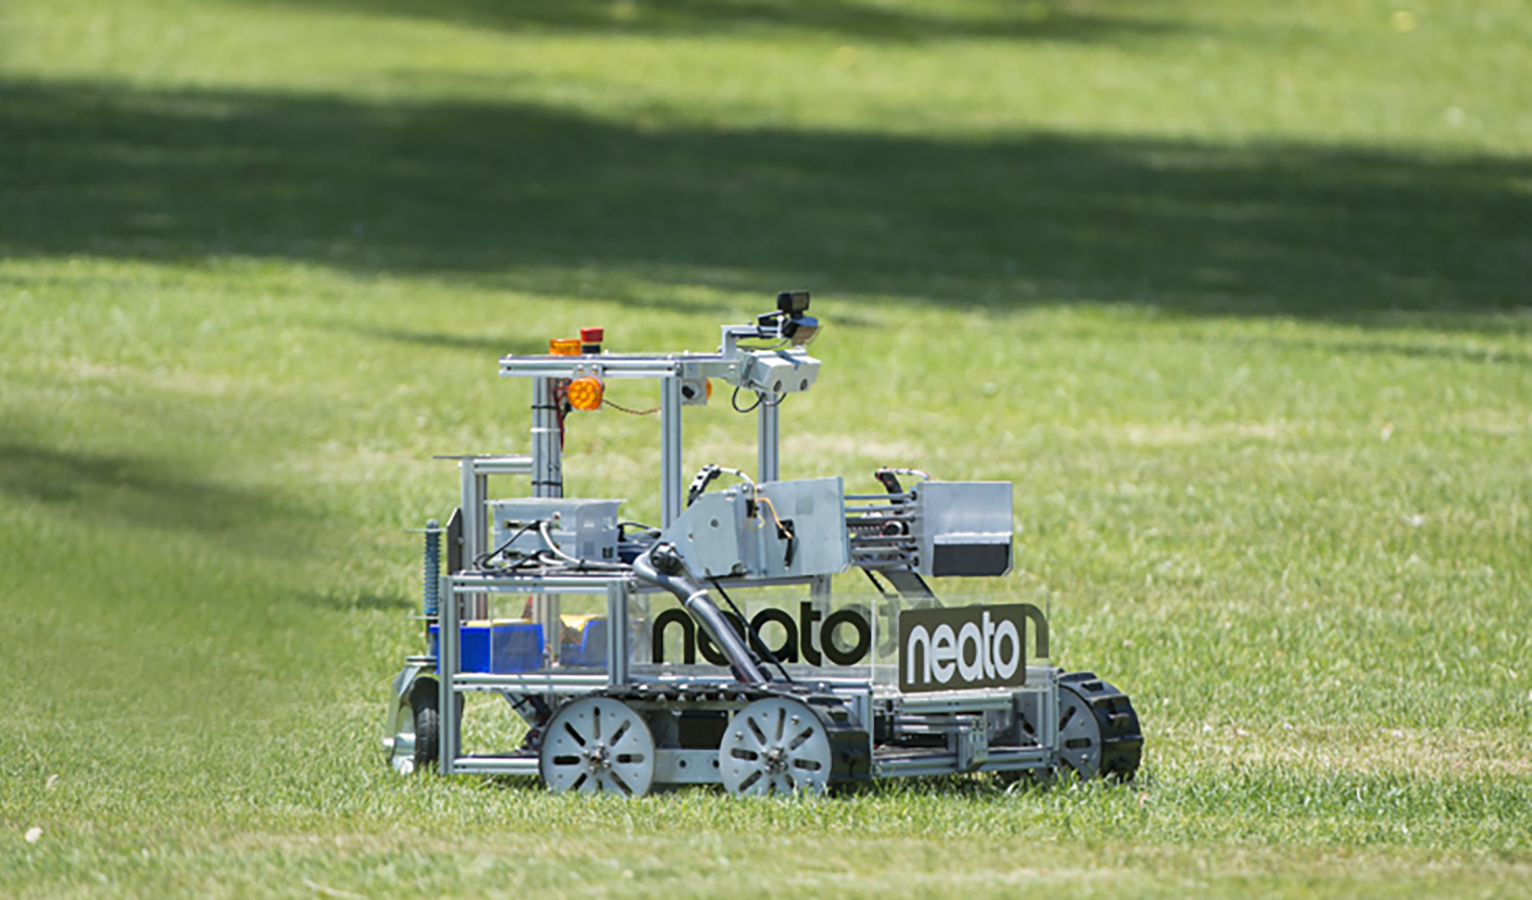 Neato-sponsored sample return robot